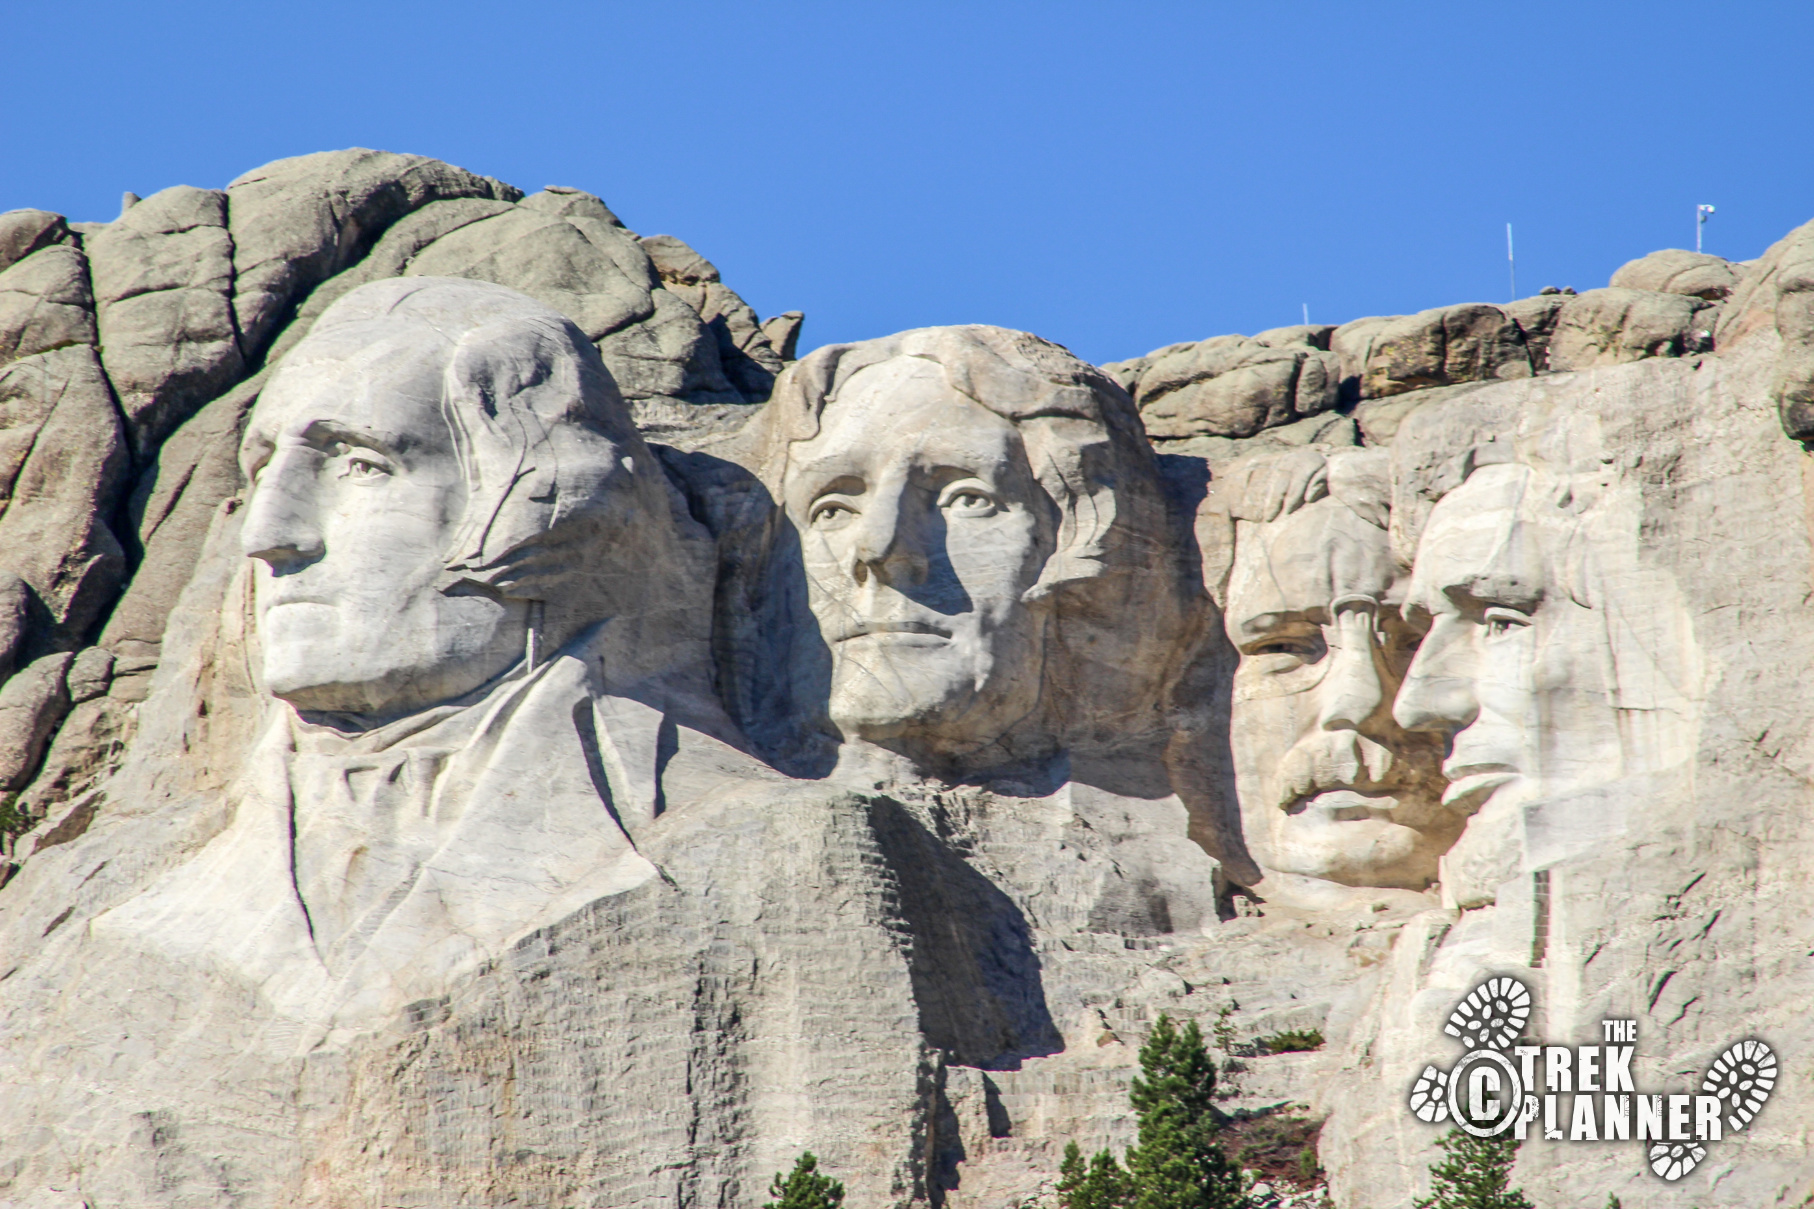 Mount Rushmore National Memorial – South Dakota